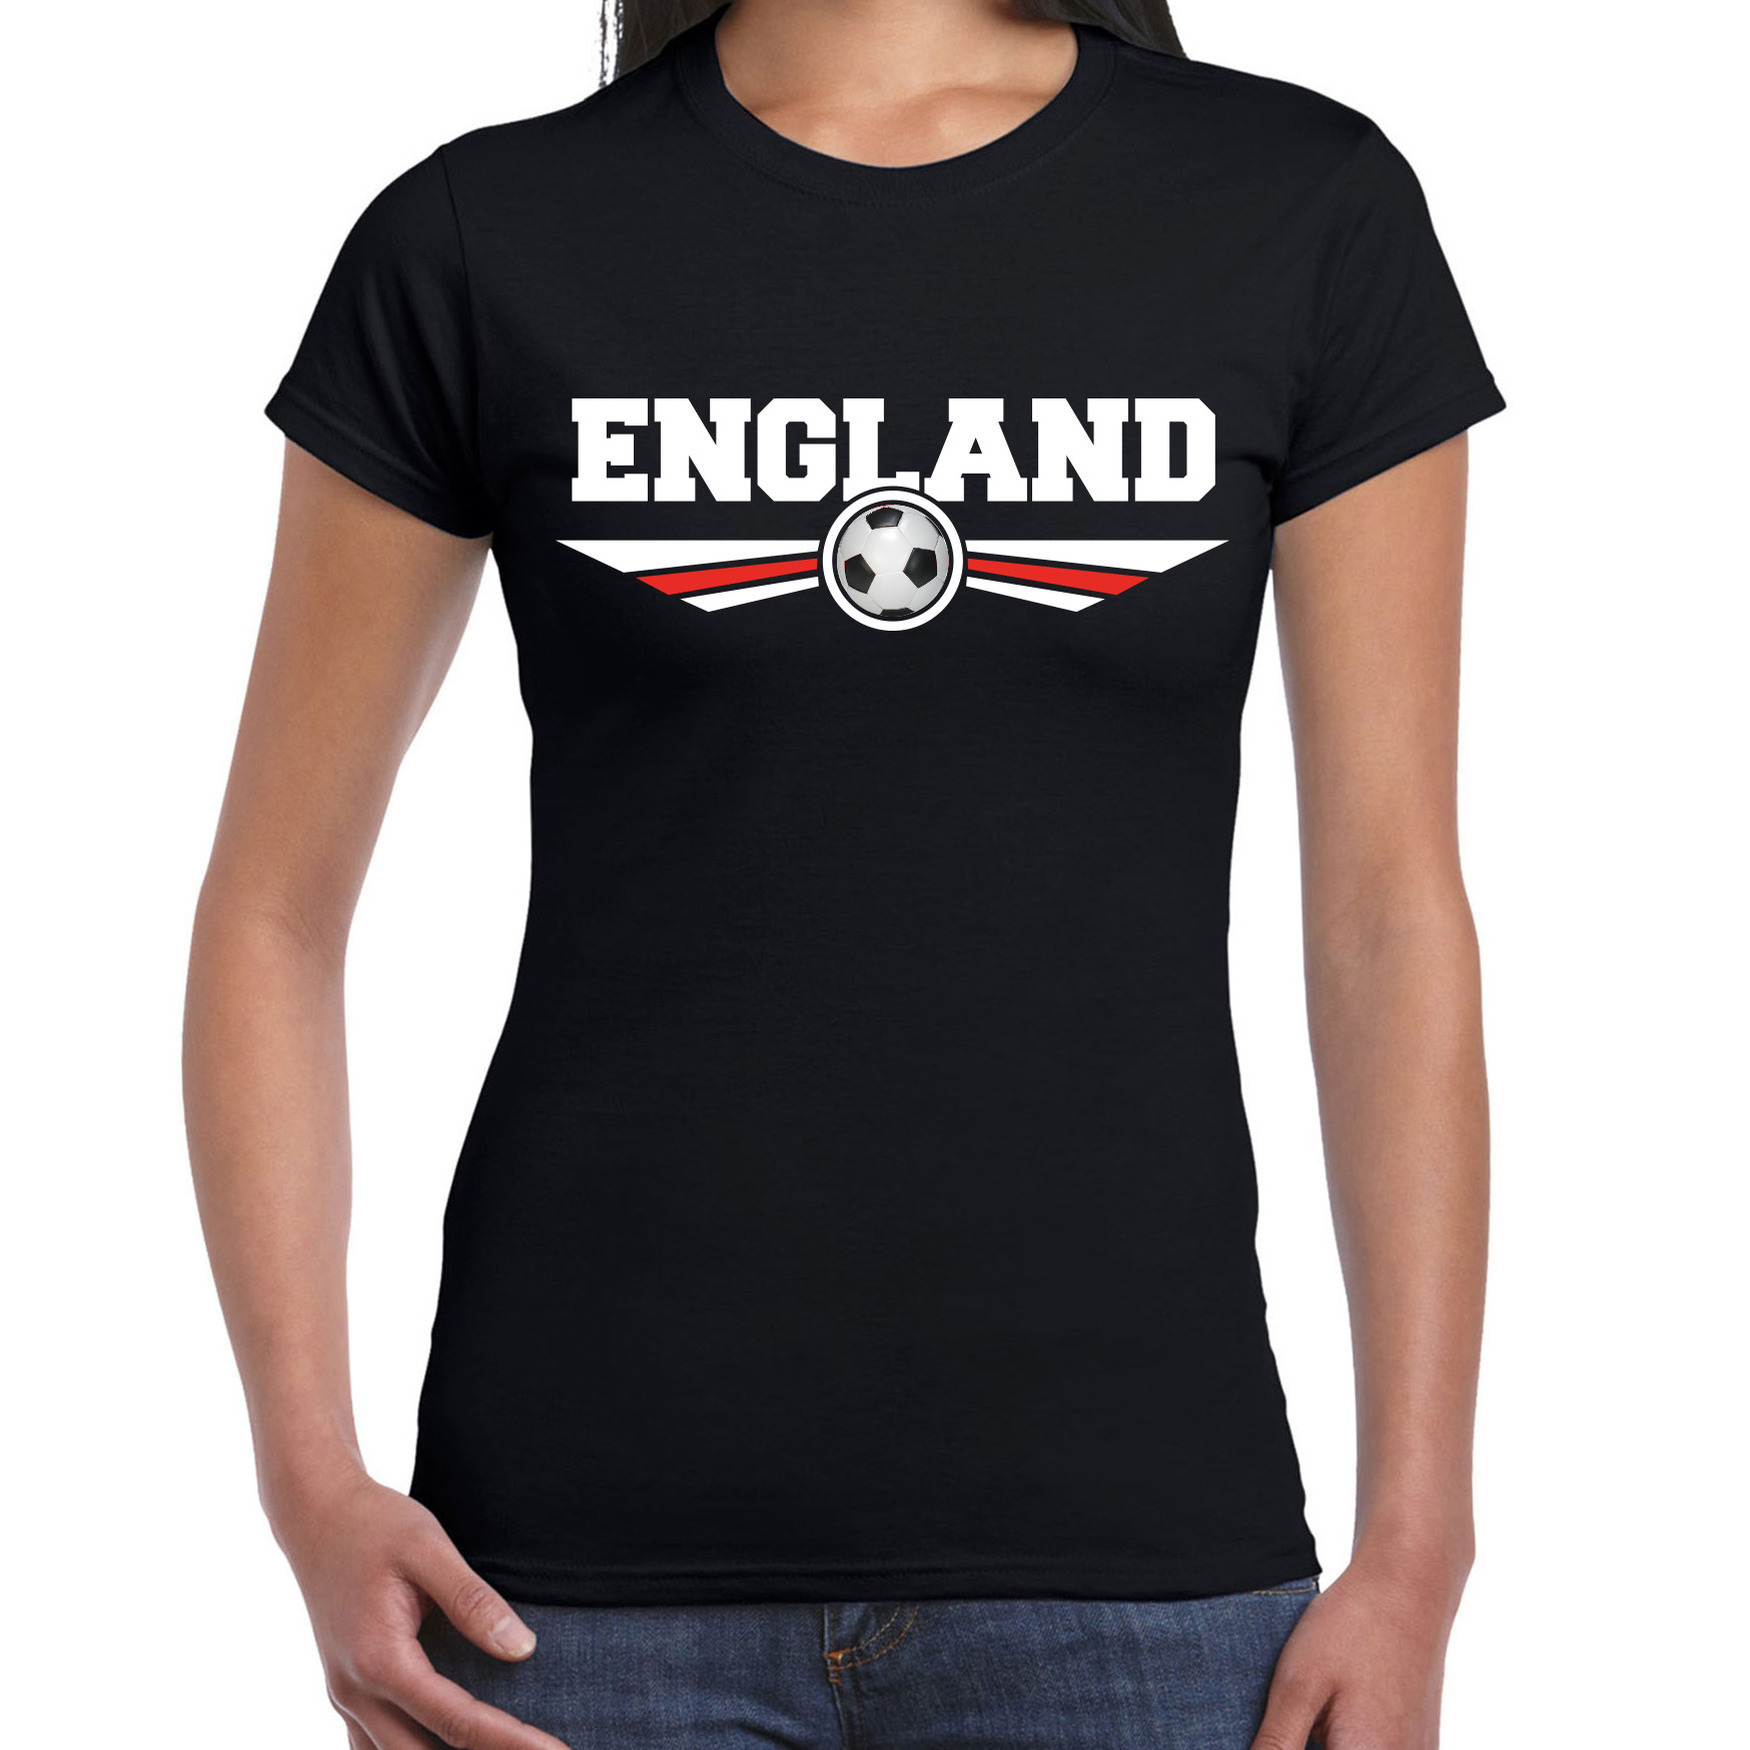 Engeland-England landen-voetbal shirt met wapen in de kleuren van de Engelse vlag zwart voor dames